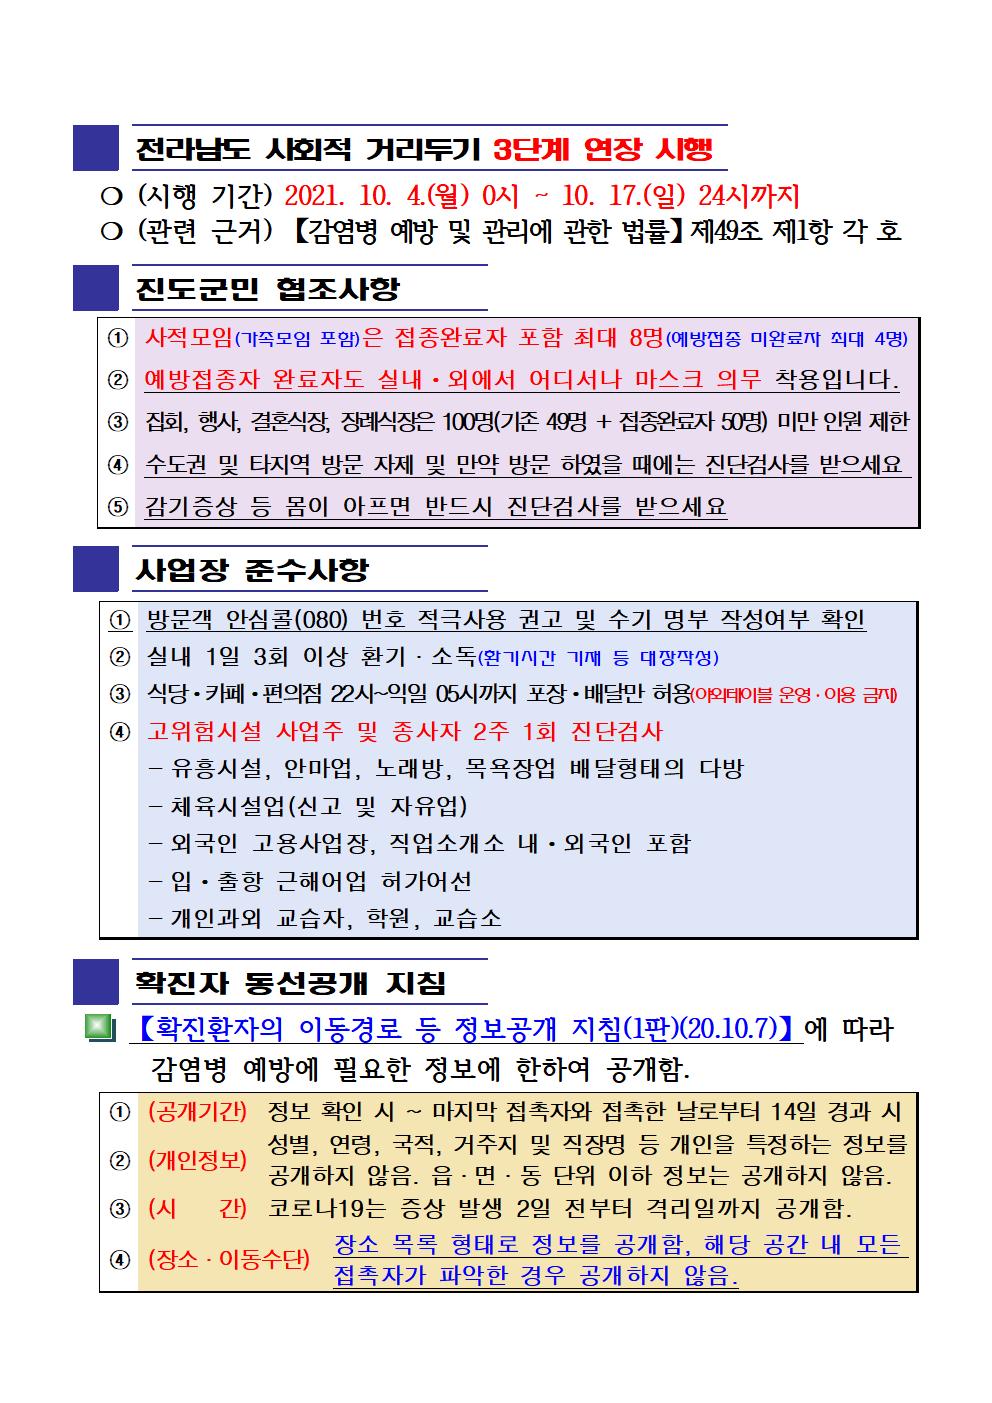 2021년 코로나19 대응 일일상황보고(10월 11일 24시 기준) 첨부#2